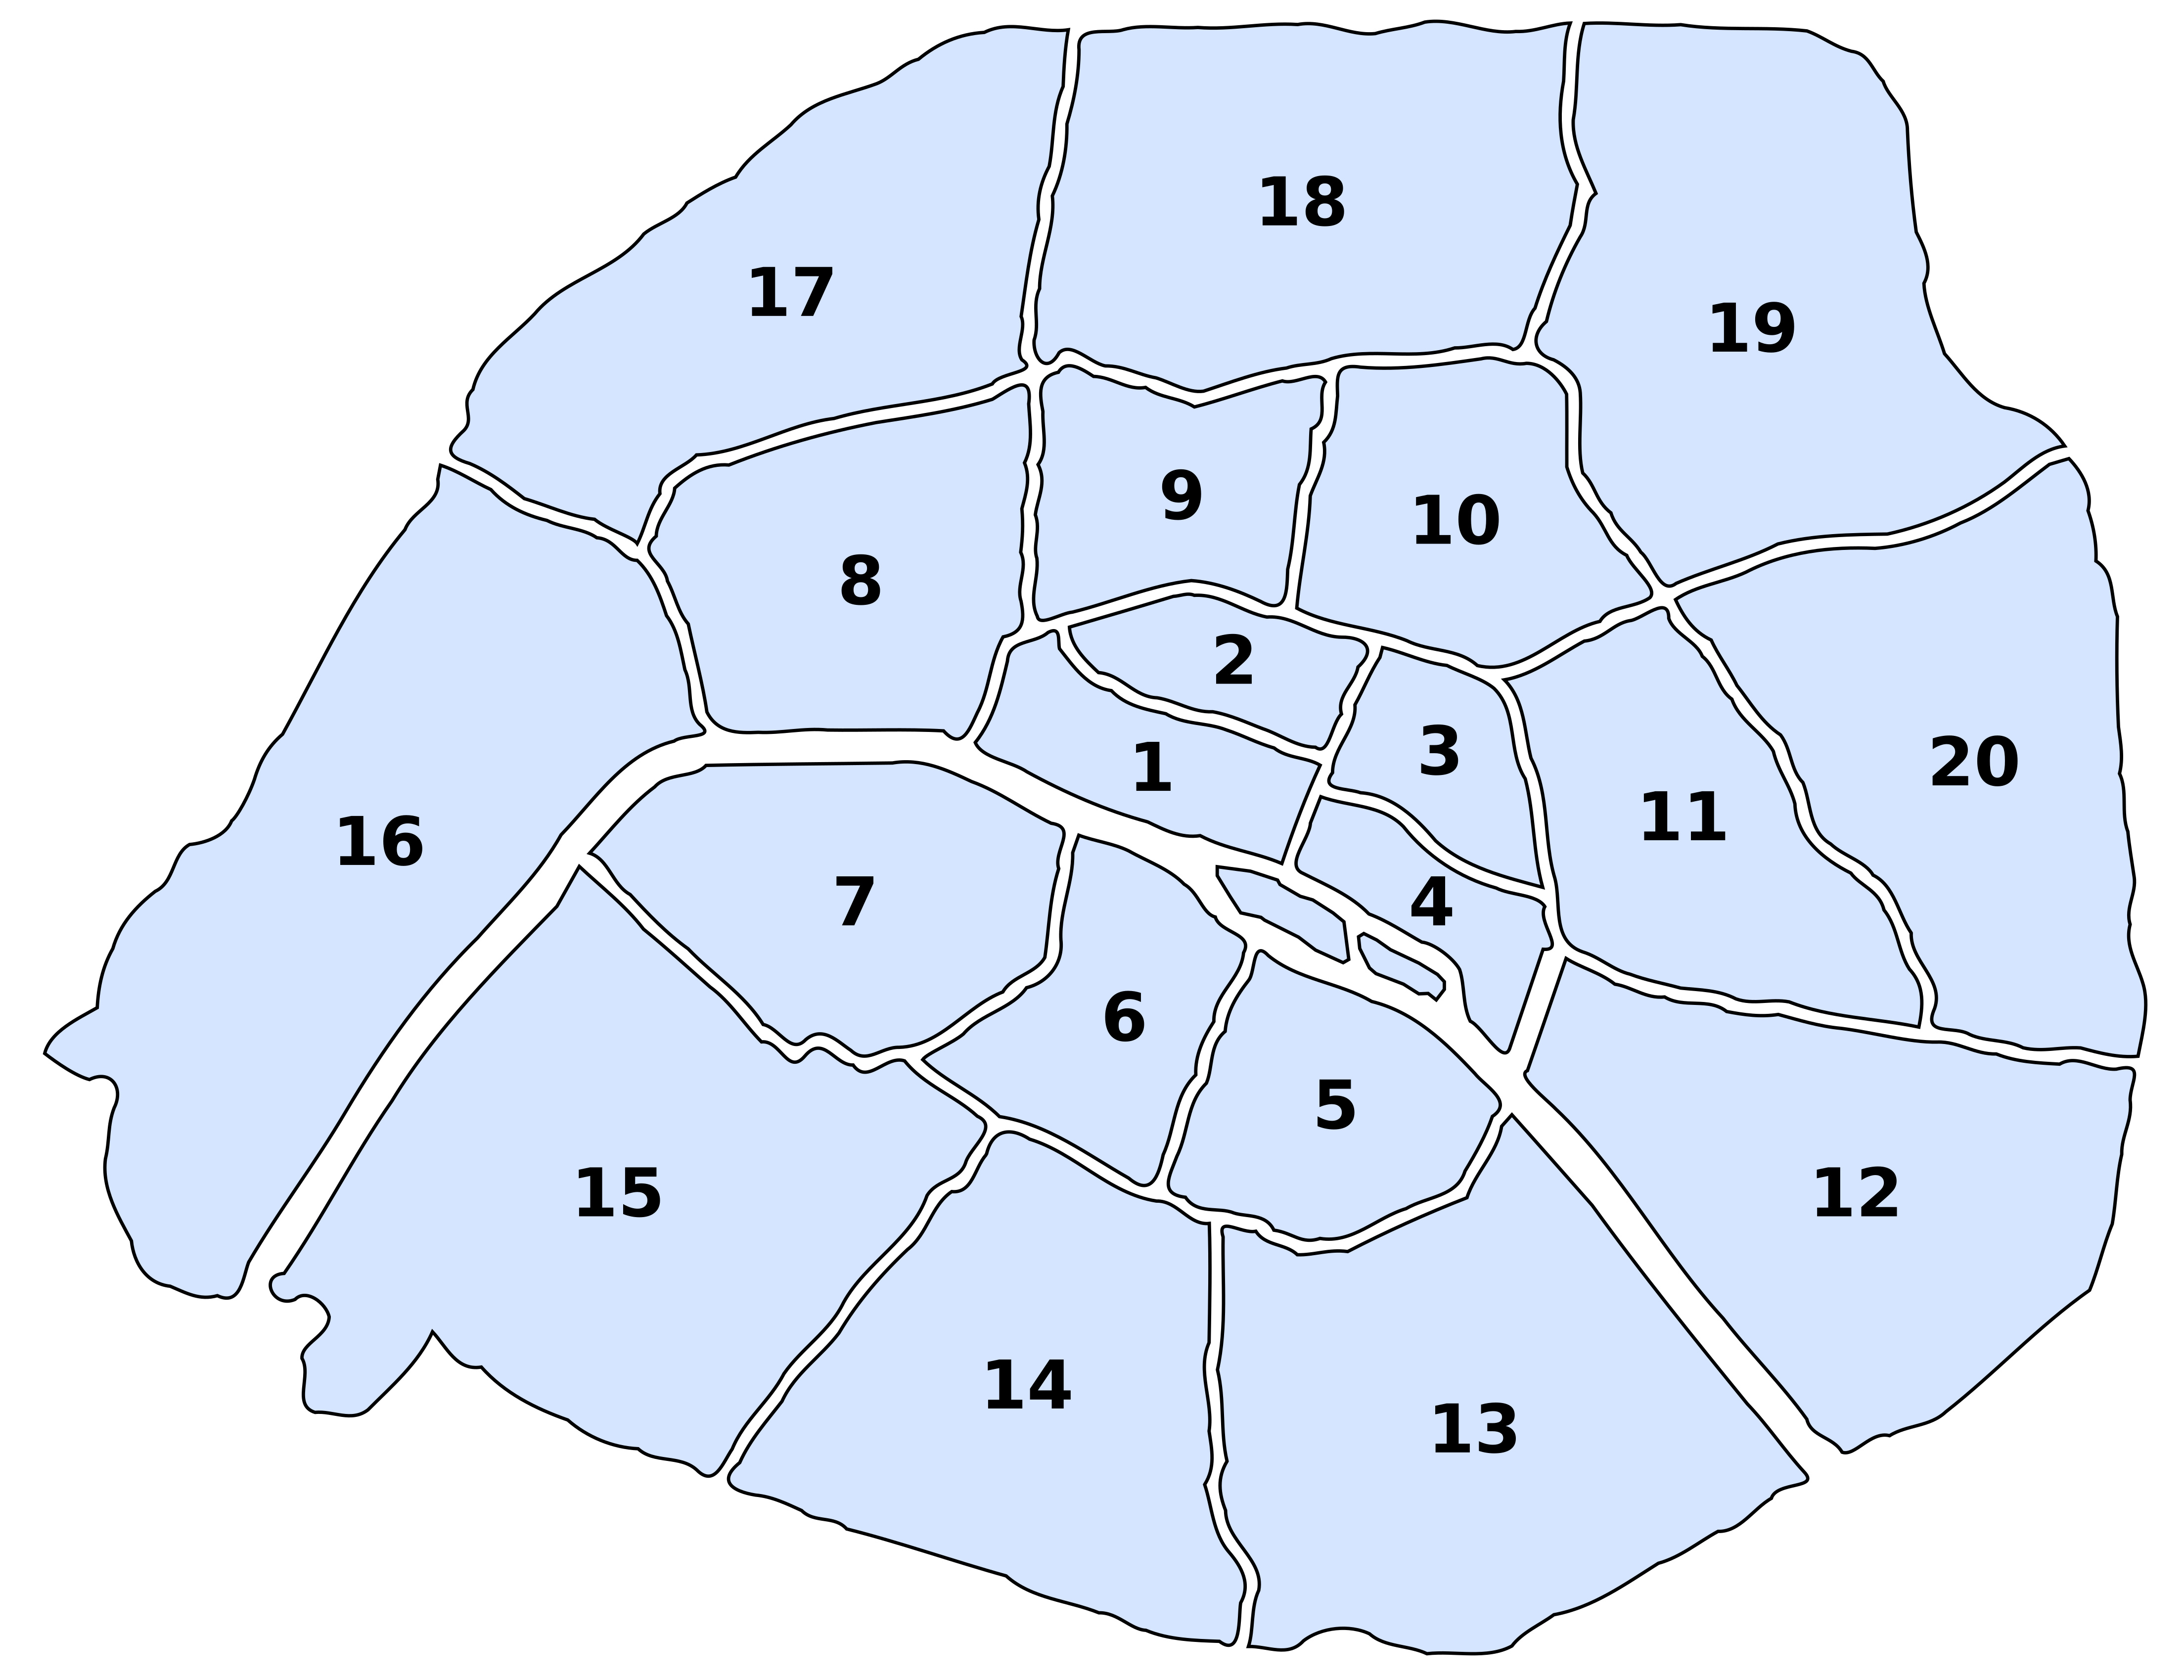 arrondissements map